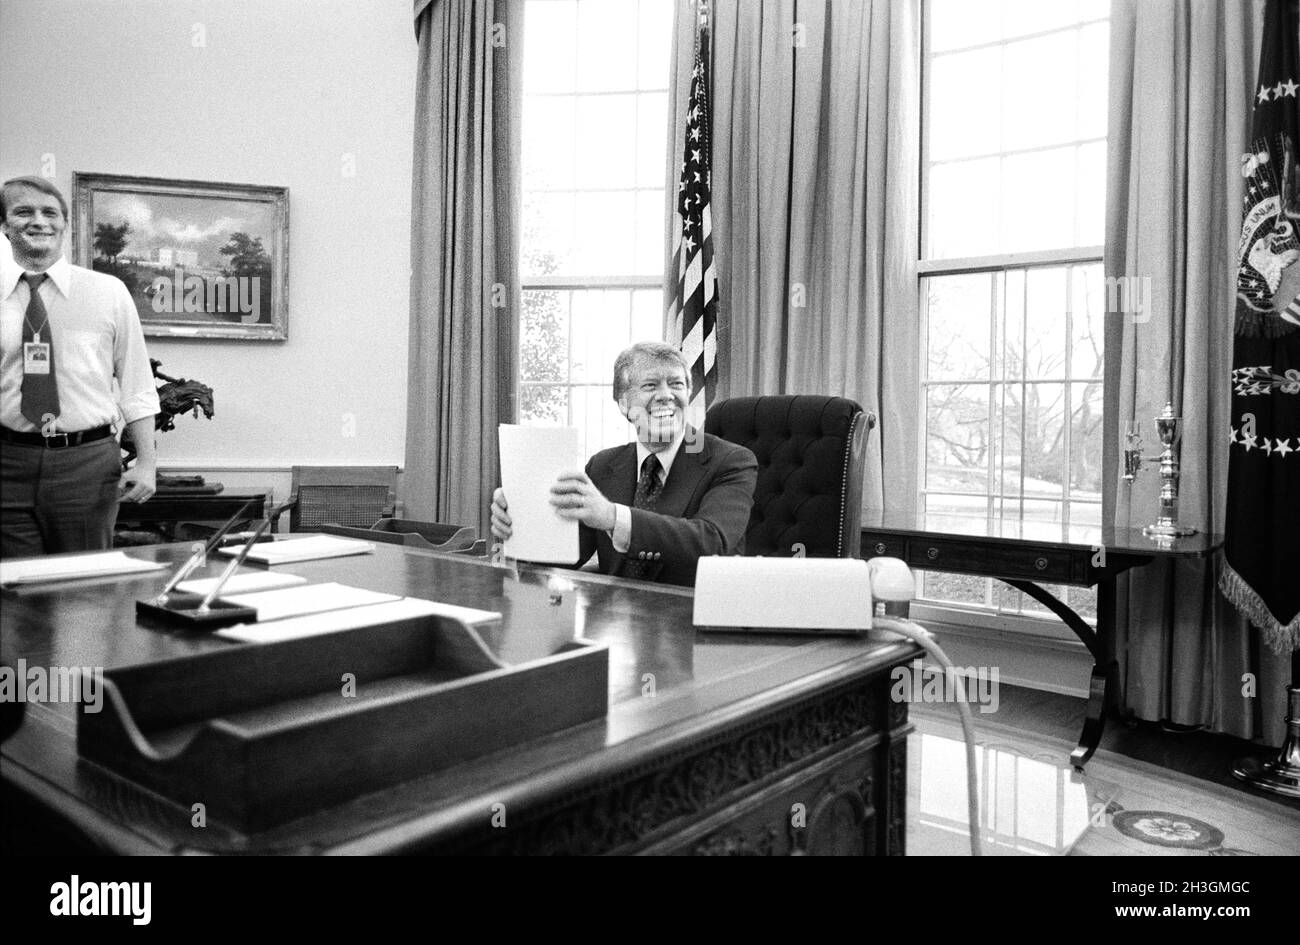 US-Präsident Jimmy Carter sitzt an seinem Schreibtisch im Oval Office und arbeitet an einer Rede für das Fernsehen, das Weiße Haus, Washington, D.C., USA, Marion S. Trikosko, US News & World Report Magazine Collection, 2. Februar 1977 Stockfoto